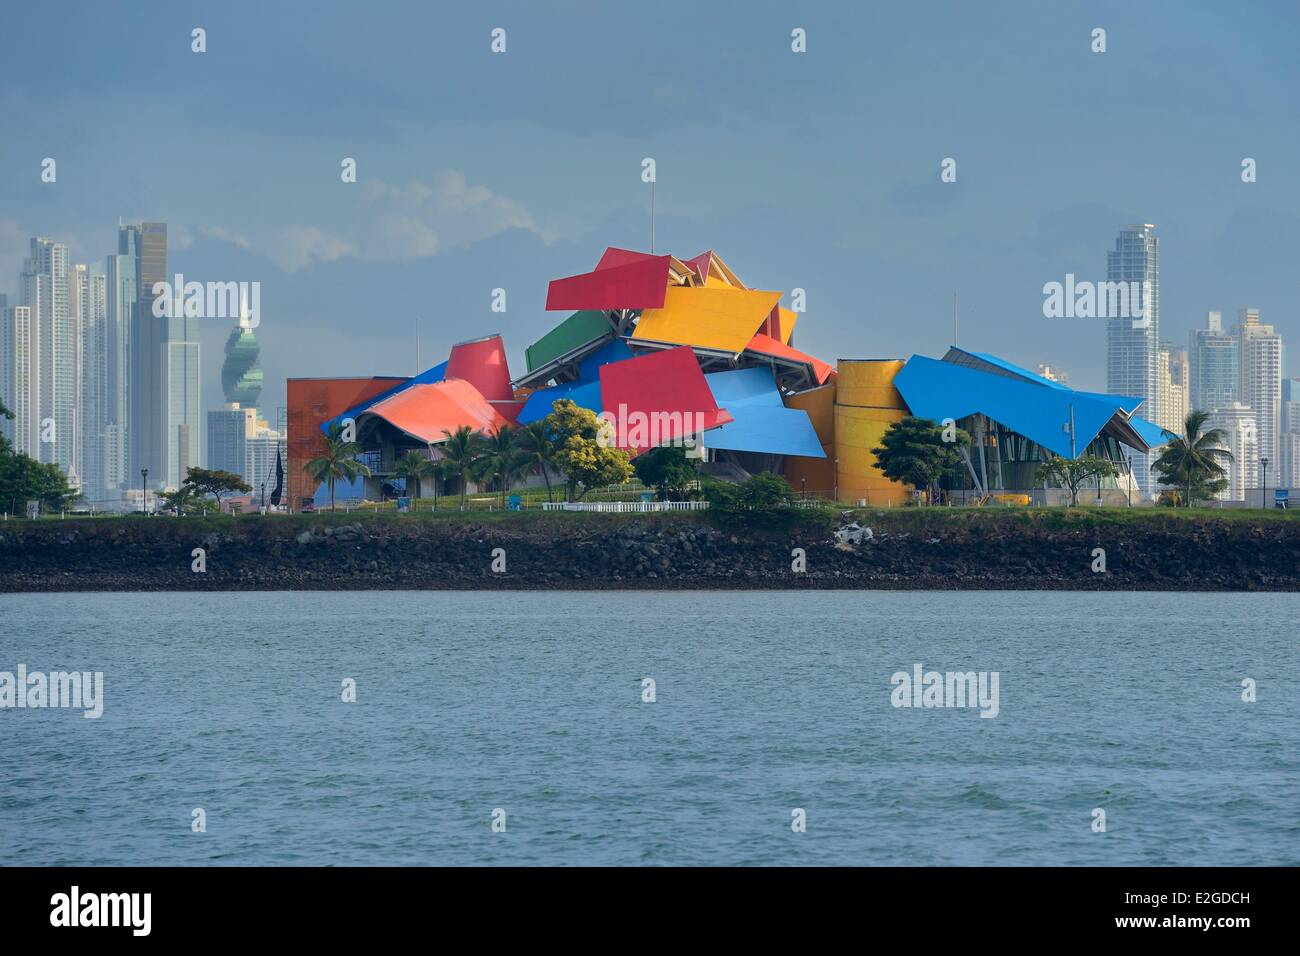 Panama Panama City Biodiversität Museum namens Panama Brücke des Lebens vom Architekten Frank Gehry, Waterfront und Hochhäuser im Hintergrund Stockfoto